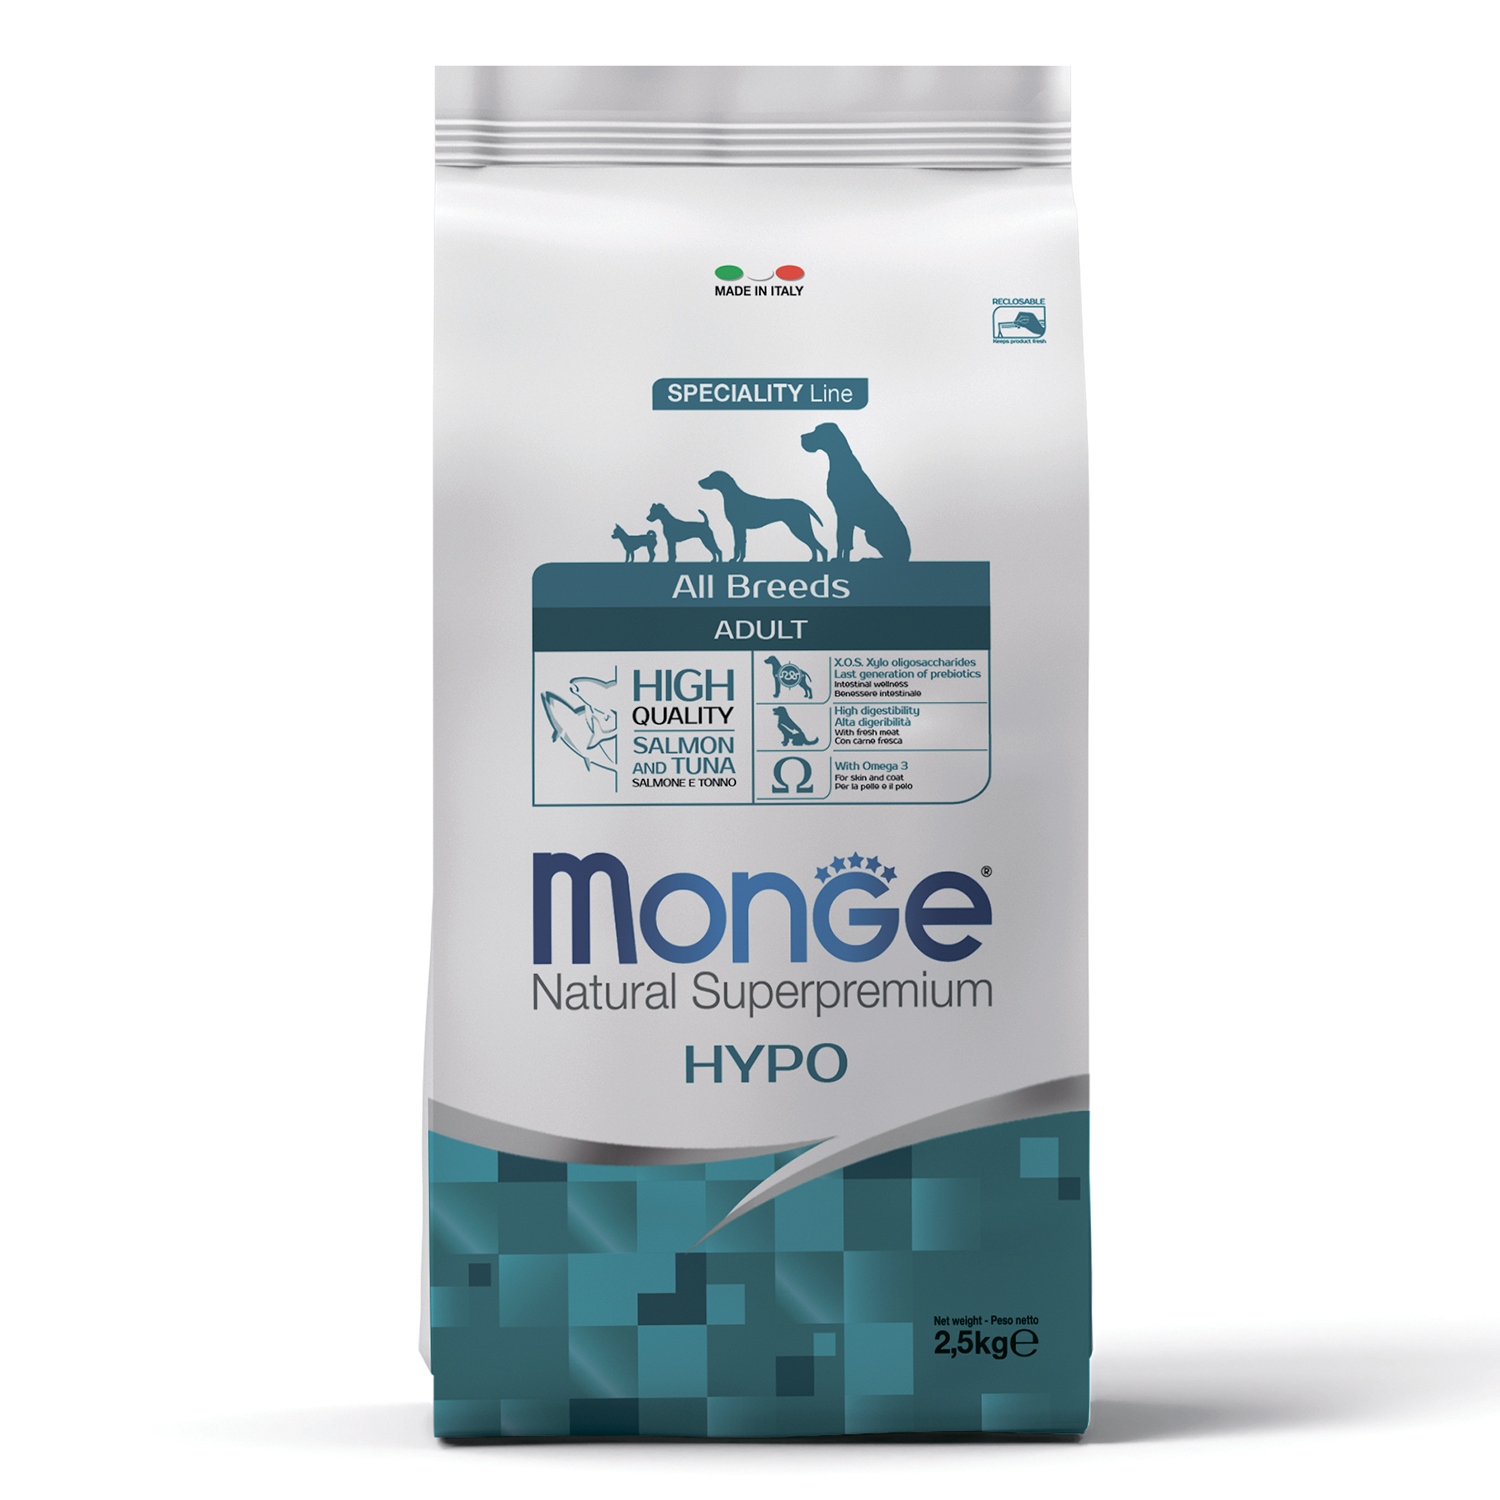 Cухой корм Monge Dog Speciality Line Hypo корм для взрослых собак, гипоаллергенный, из лосося с тунцом 2,5 кг